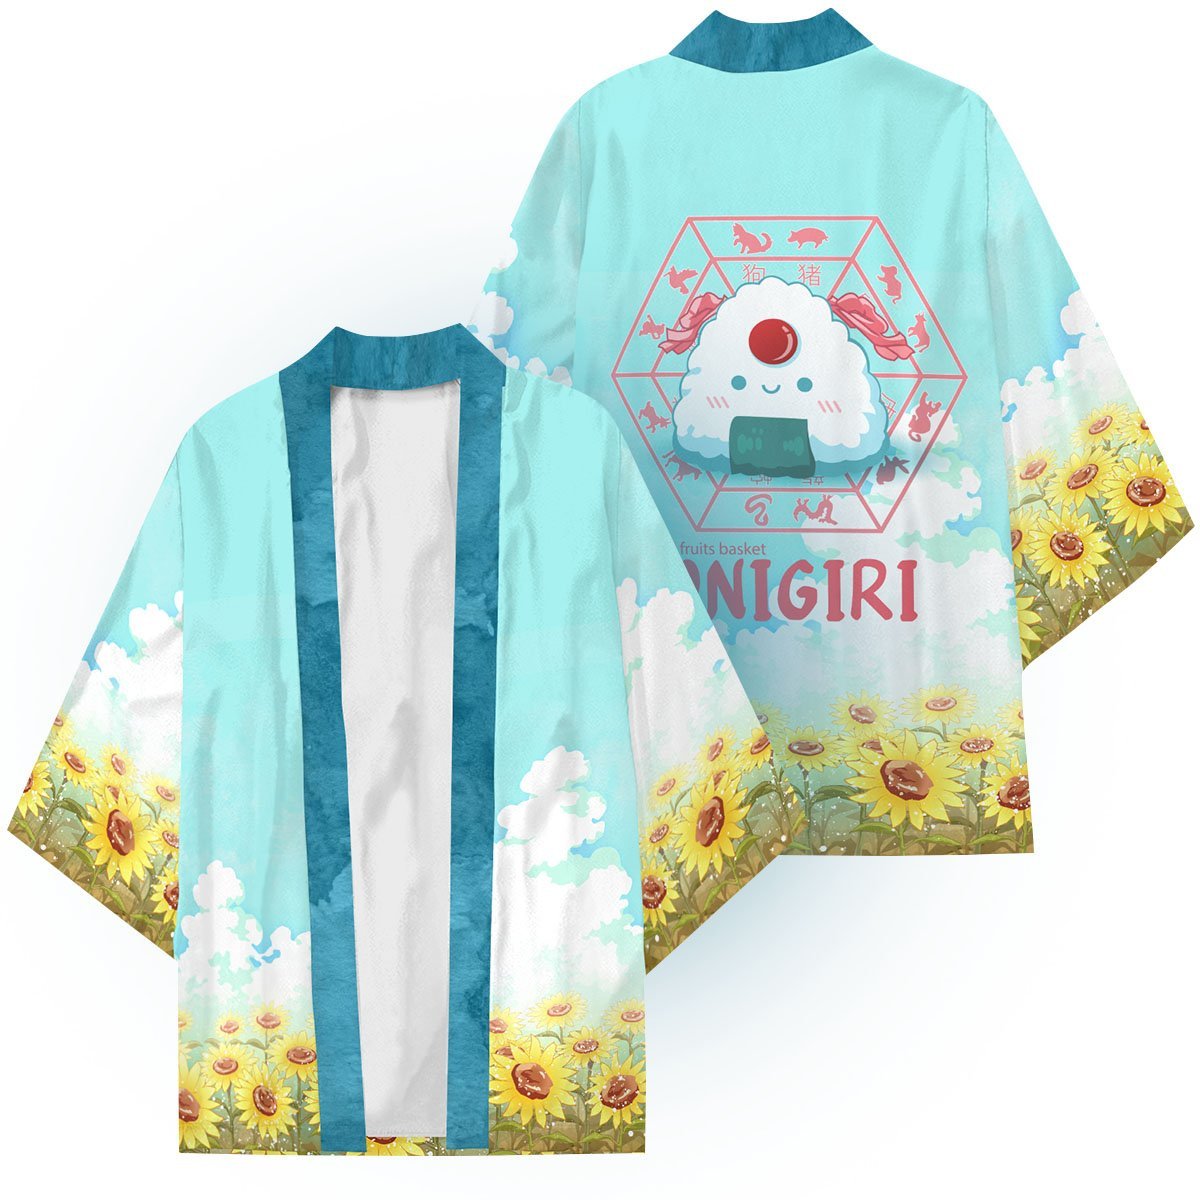 Tohru the Onigiri Kimono FDM3107 S Official Anime Kimono Merch